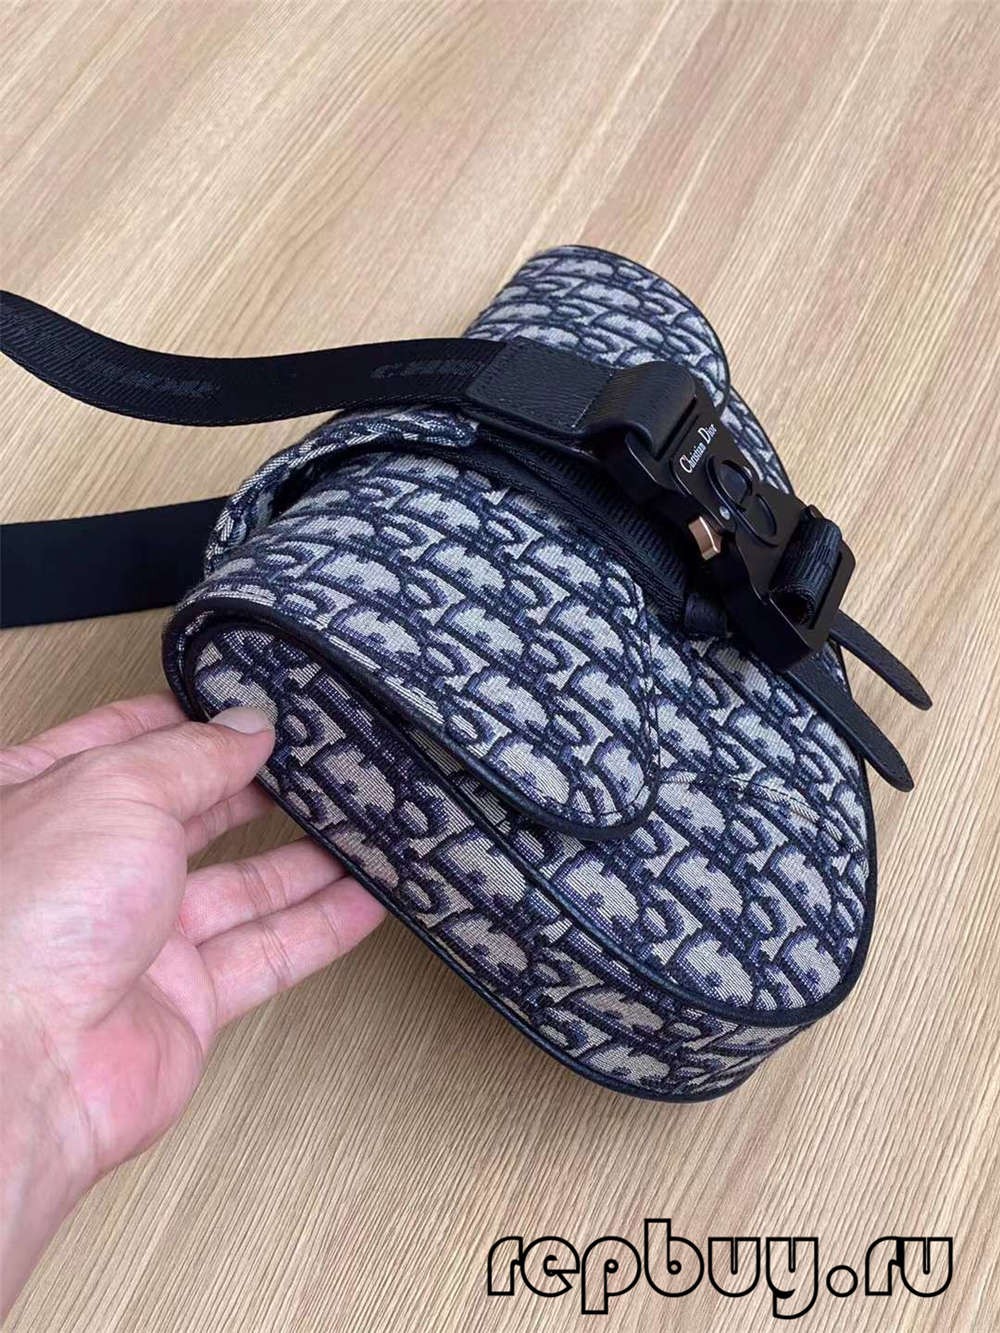 Dior top replica saddle bag black embroidery Oblique print 26cm (2022 Special)-Best Quality Fake Louis Vuitton Bag Online Store, Replica designer bag ru